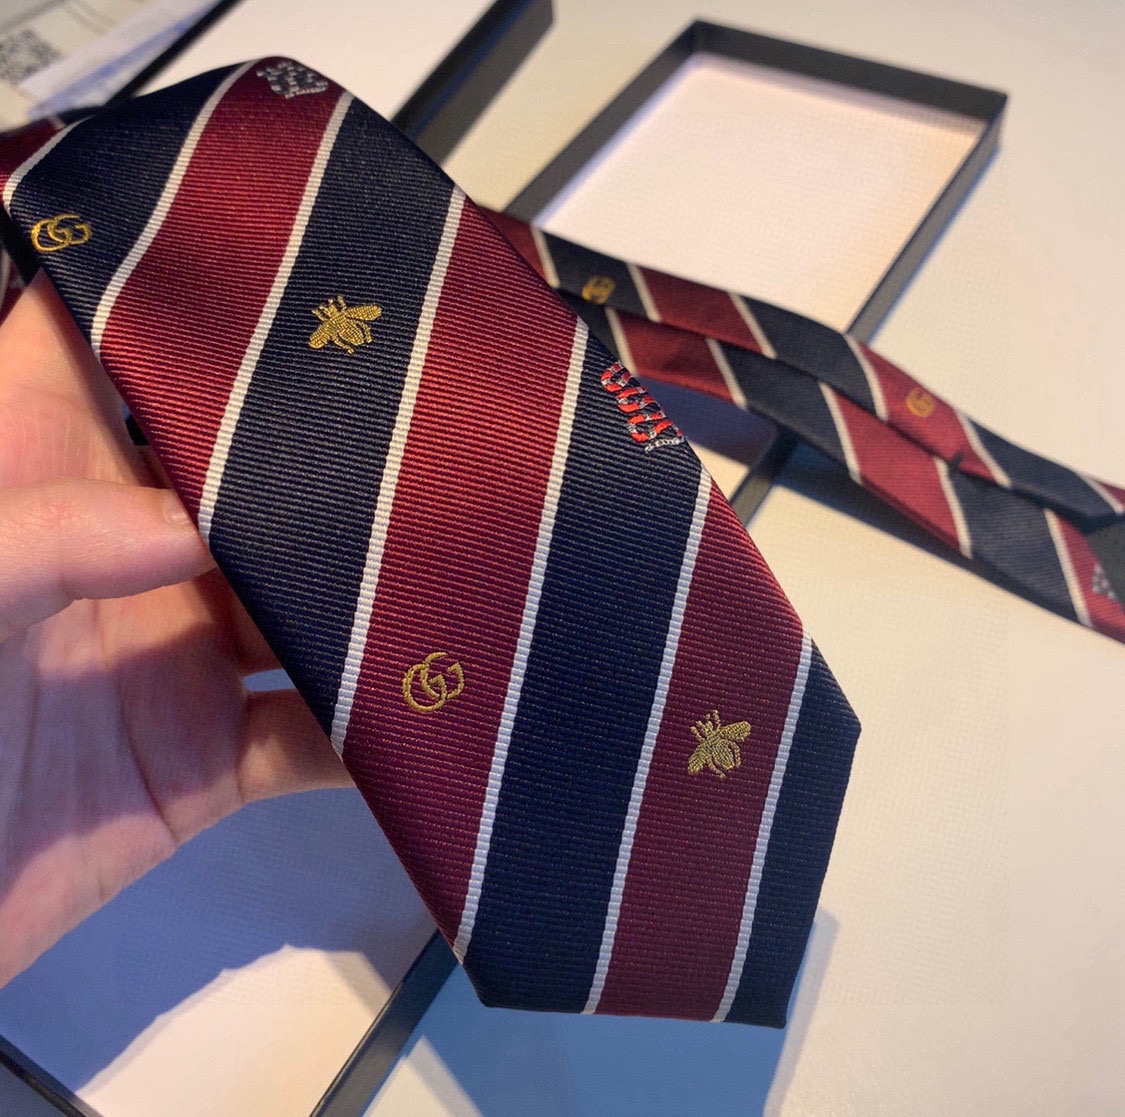 配包装G家男士领带系列稀有展现精湛手工与时尚优雅的理想选择这款领带将标志性的主题动物小蜜蜂与斜纹织带完美